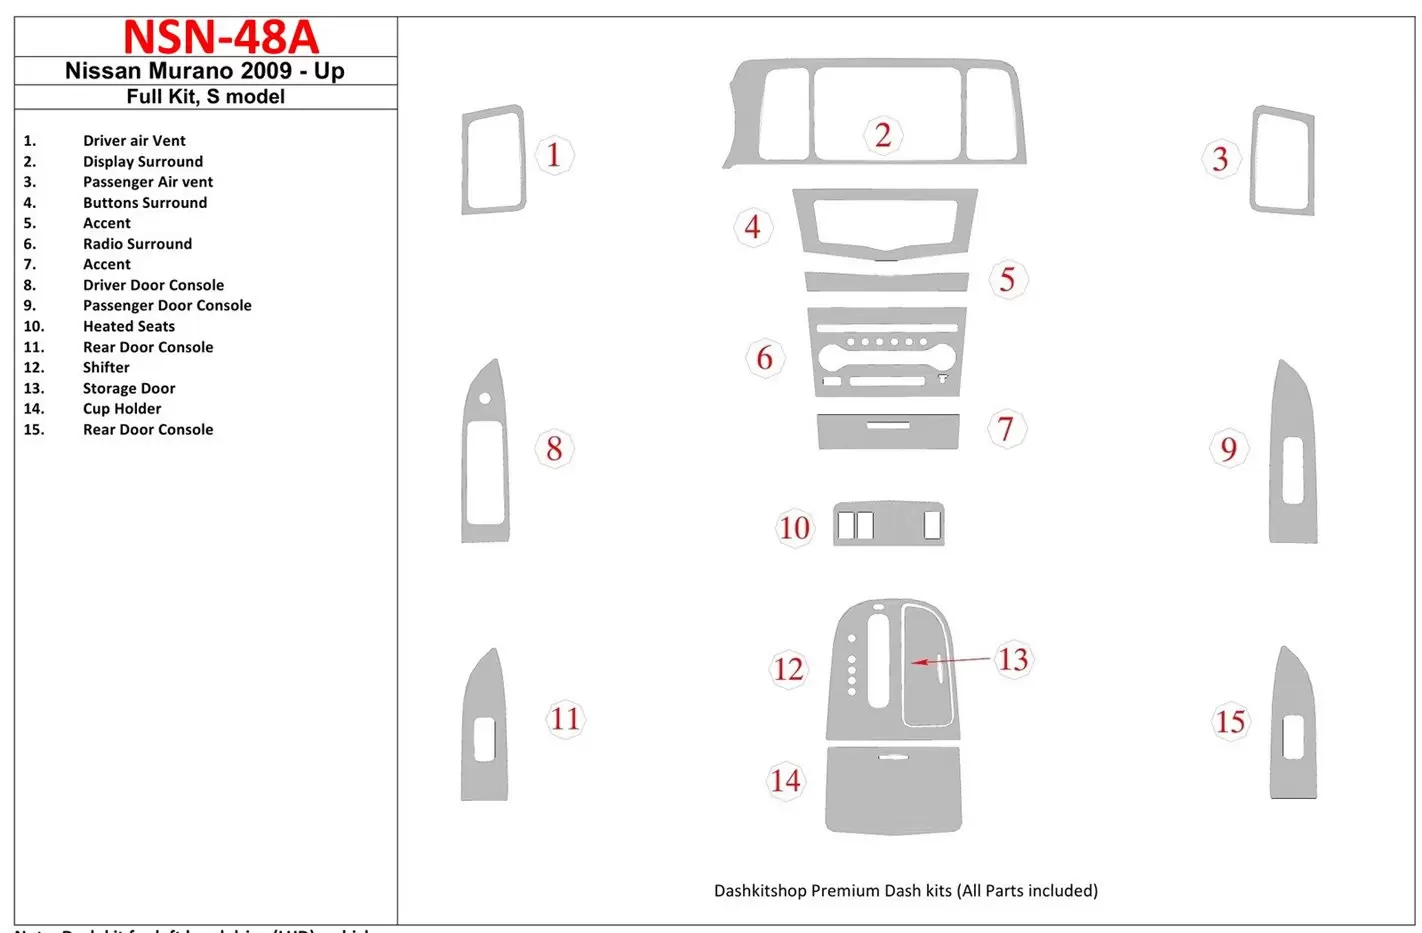 Nissan Murano 2009-UP Ensemble Complet, S model BD Kit la décoration du tableau de bord - 1 - habillage decor de tableau de bord